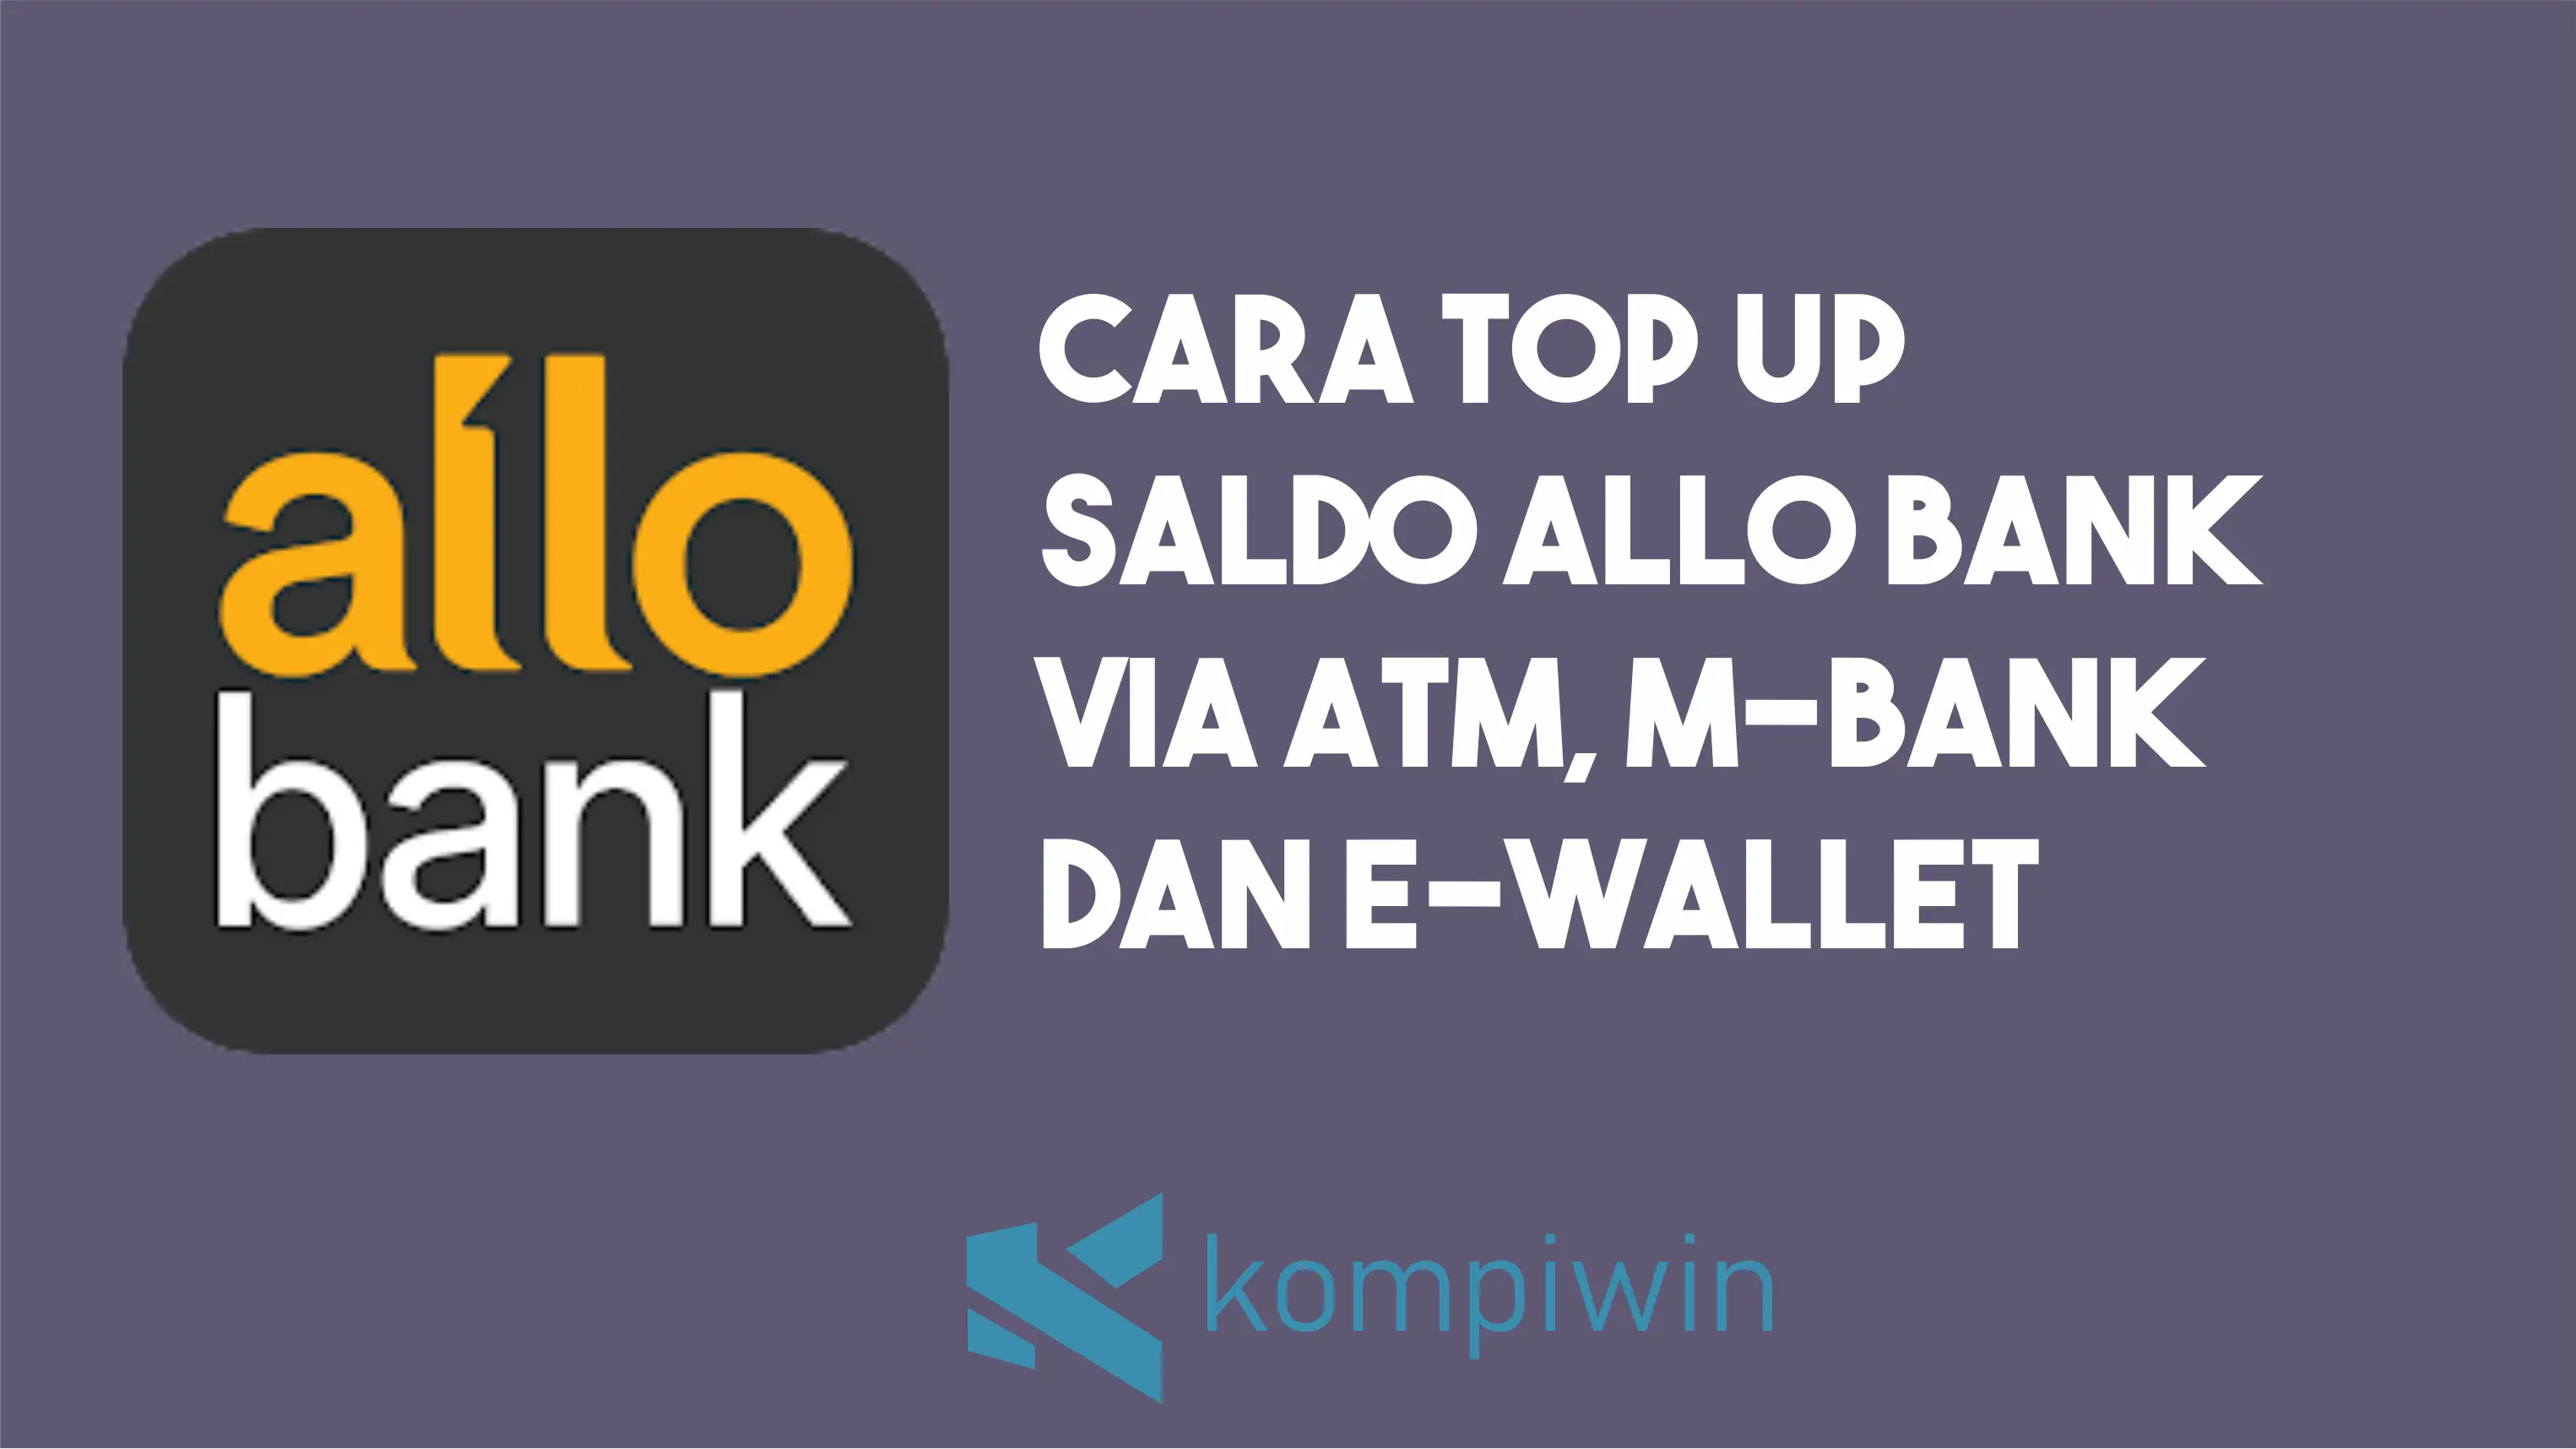 Cara Top UP Saldo Allo Bank via ATM, M-Bank, dan E-Wallet